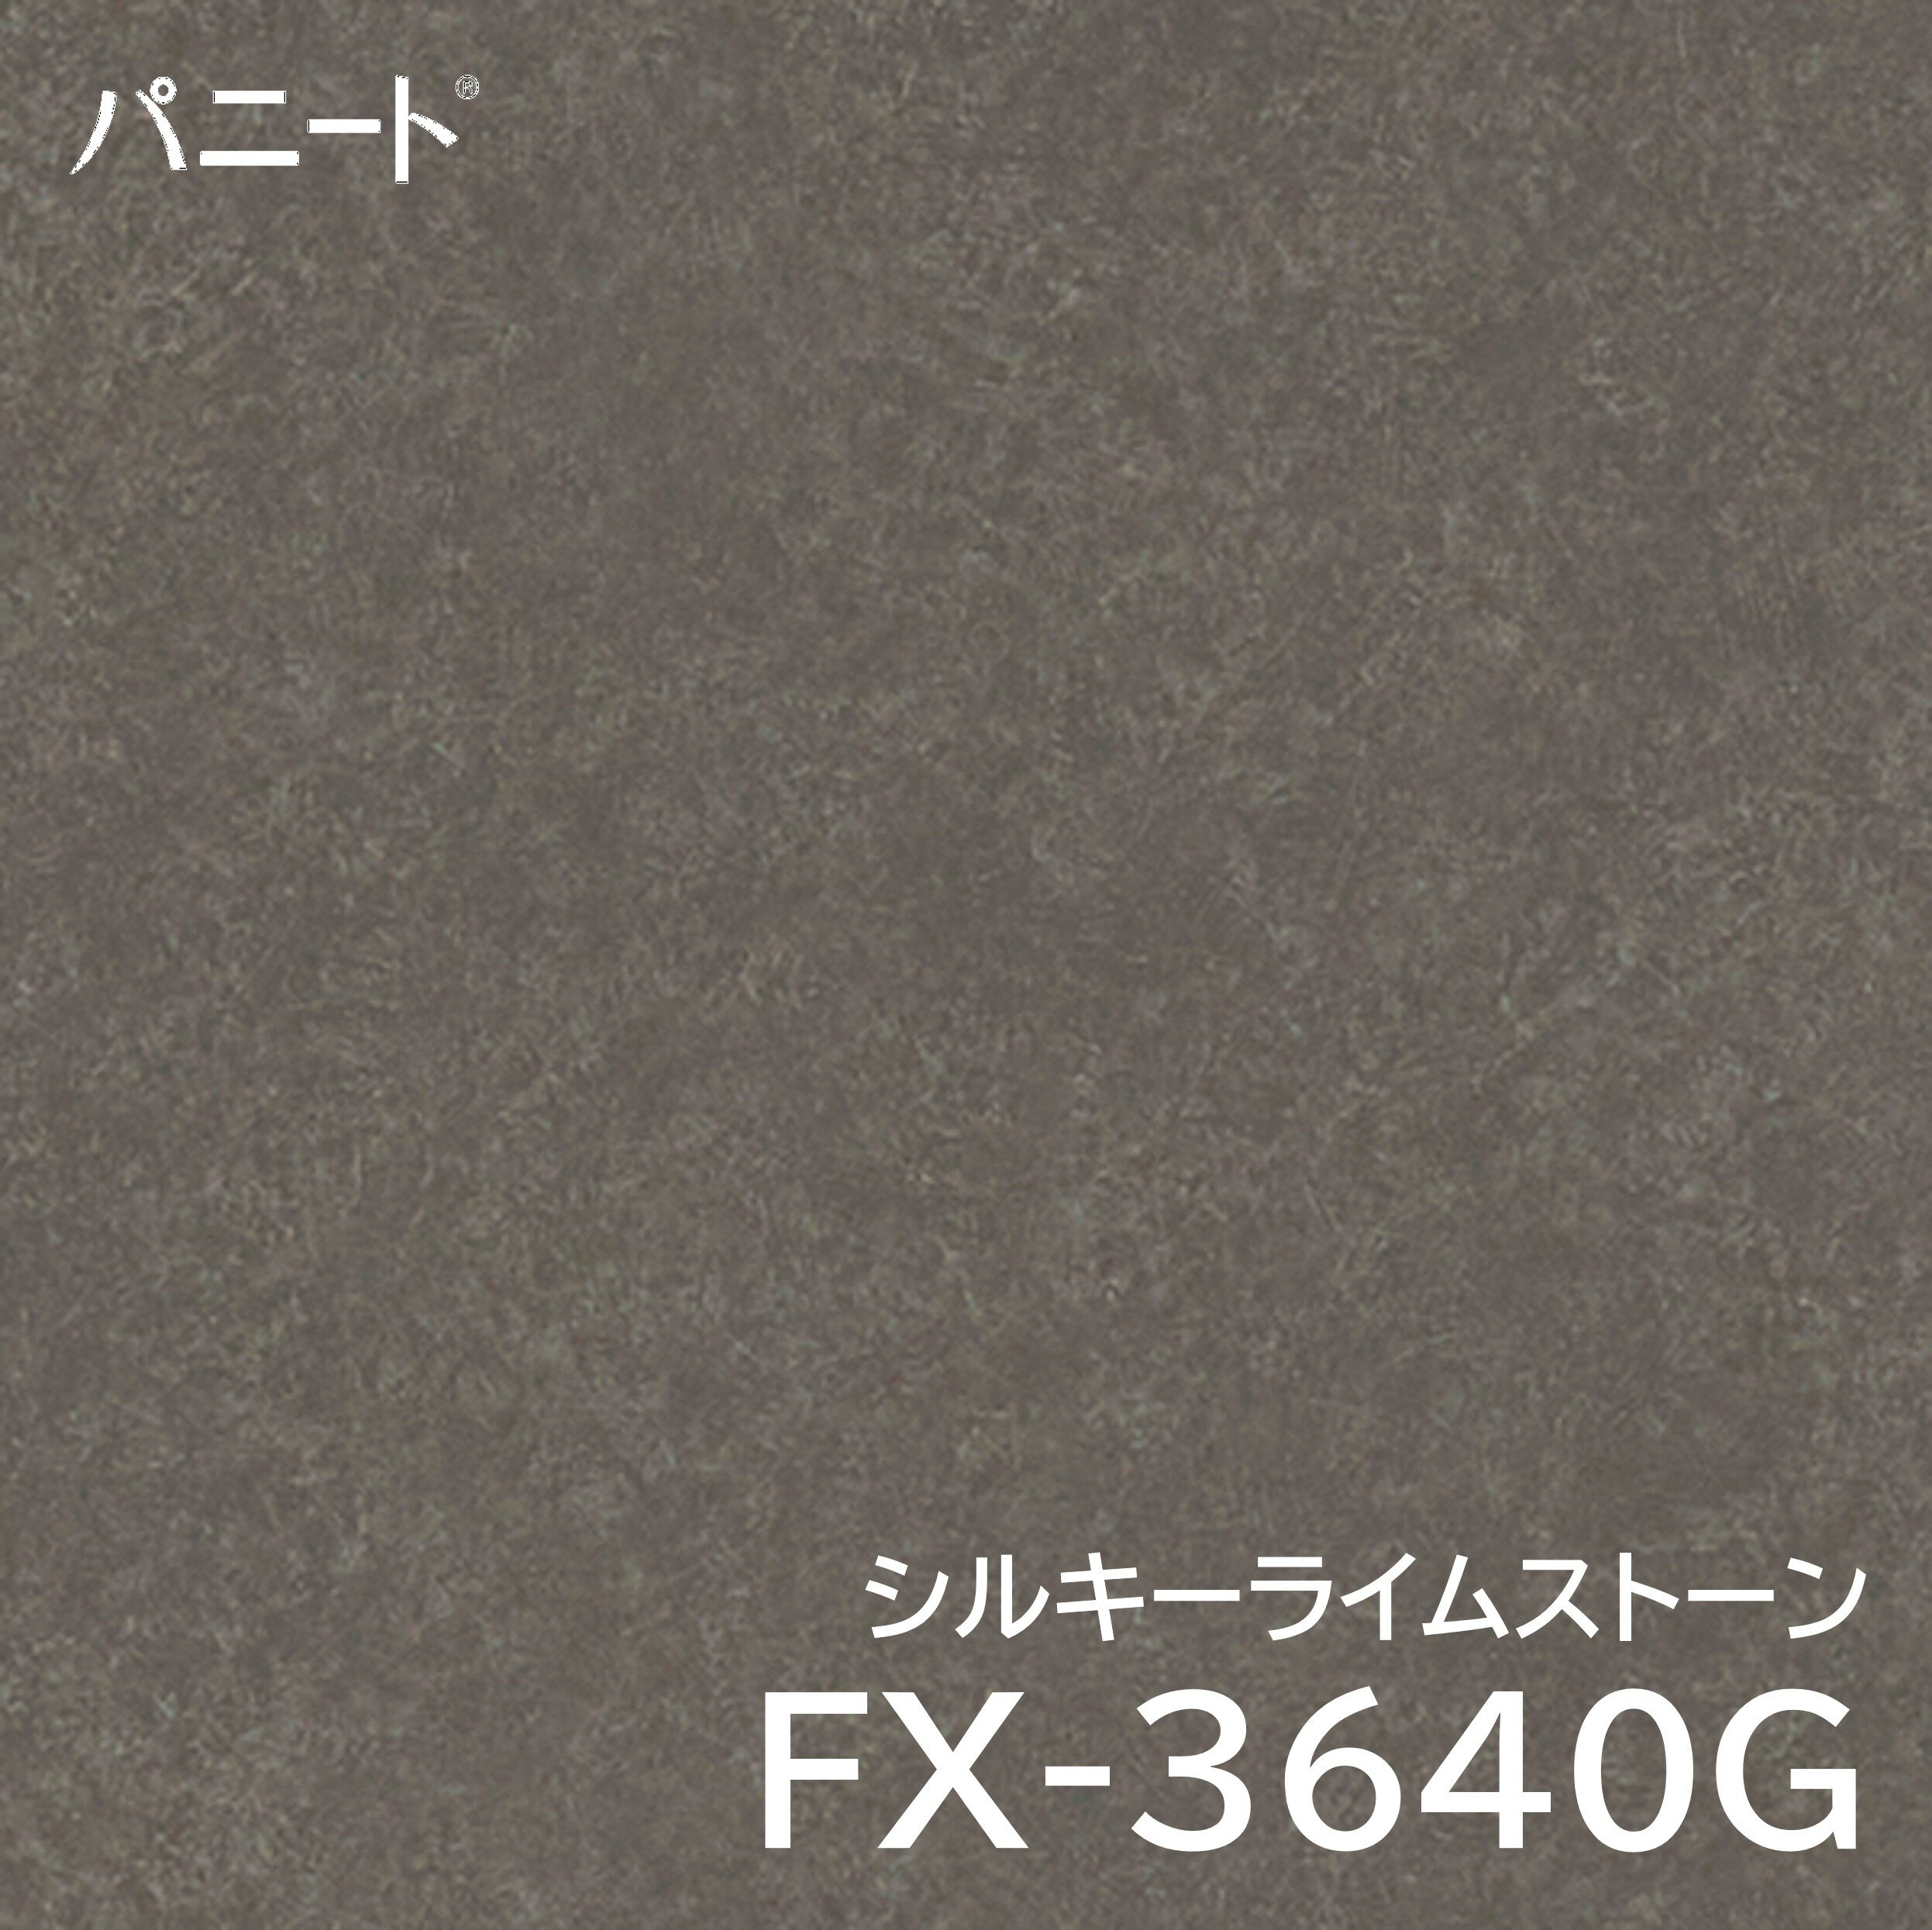 キッチンパネル パニート FX-3640G 3×8 3.0mm 910×2420mm 日本デコラックス 不燃メラミン化粧板 1枚入 シルキーライムストーン